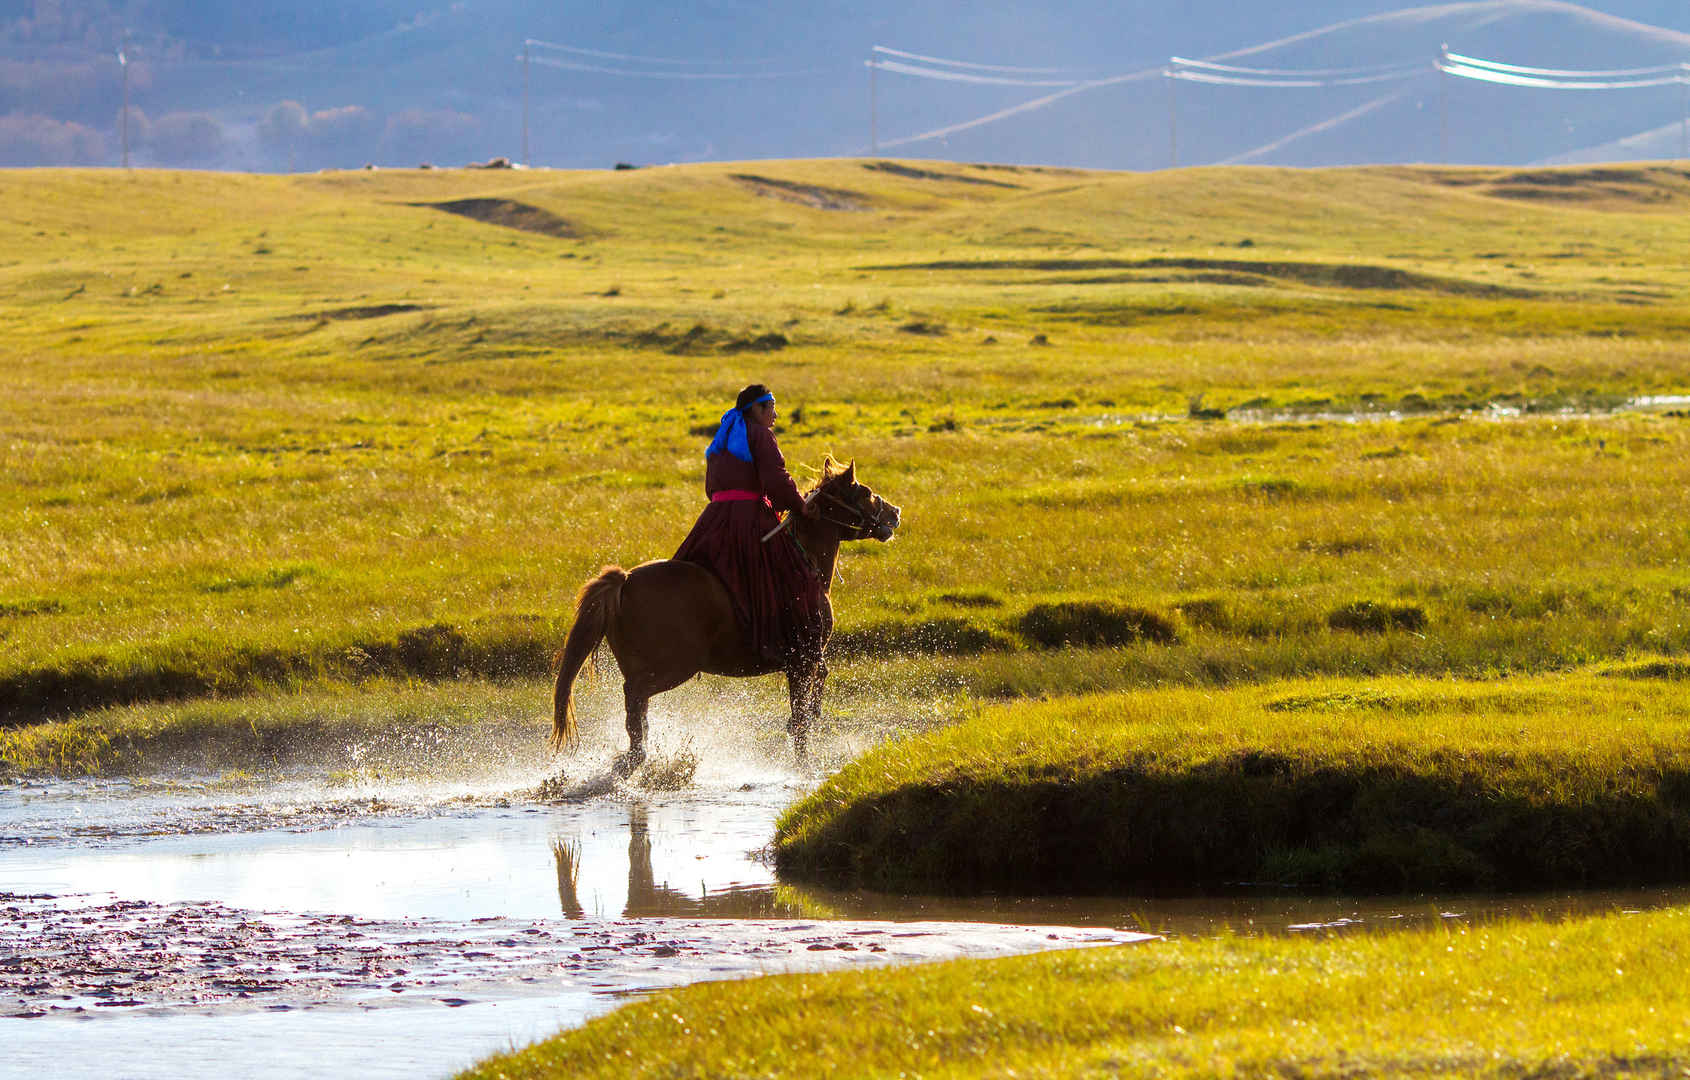 内蒙古自治区乌兰布统秋季风景图片-